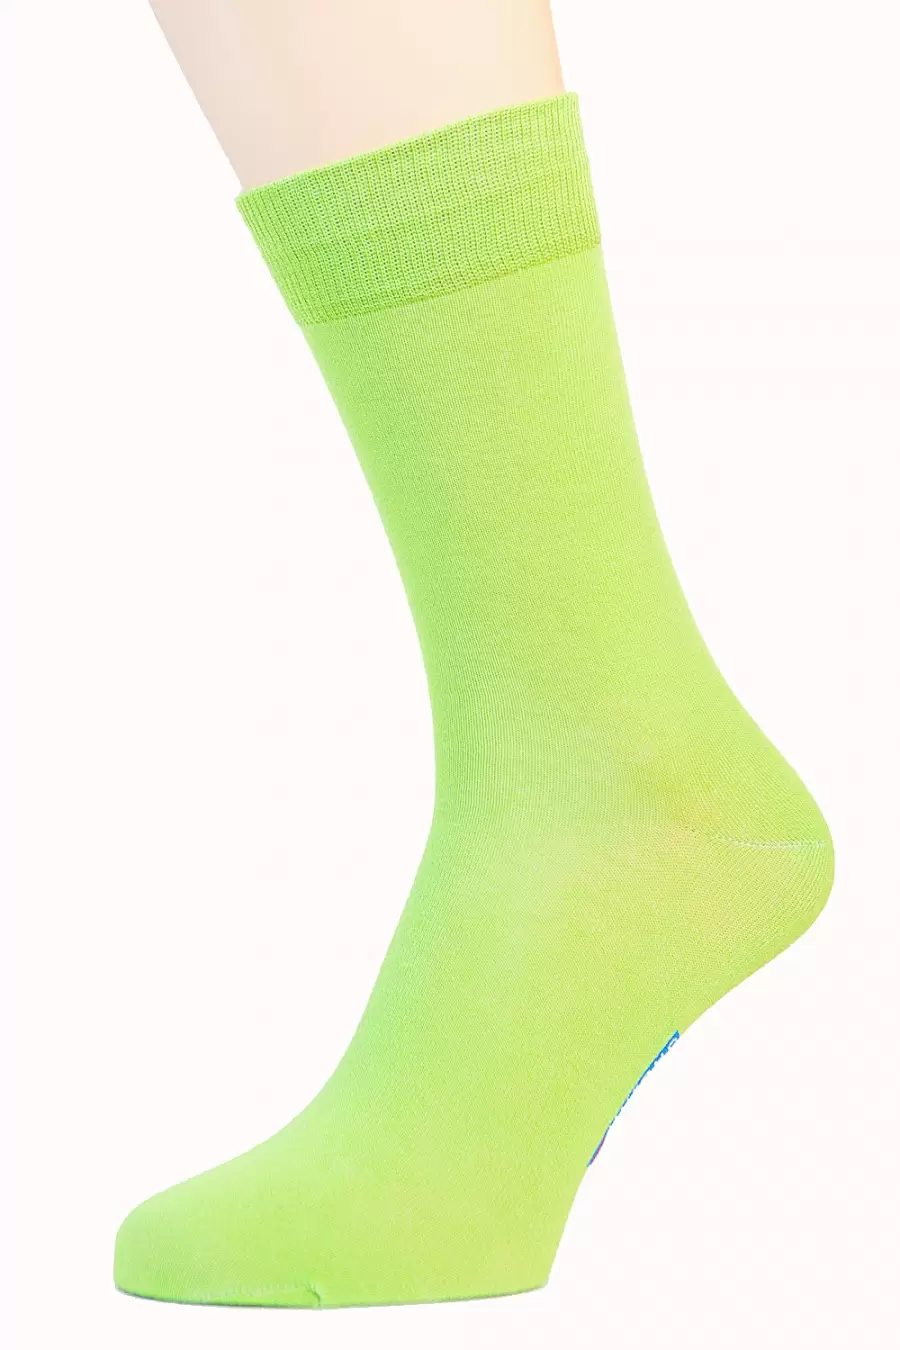 Салатовые носки Nosok-278 (изображение 1)